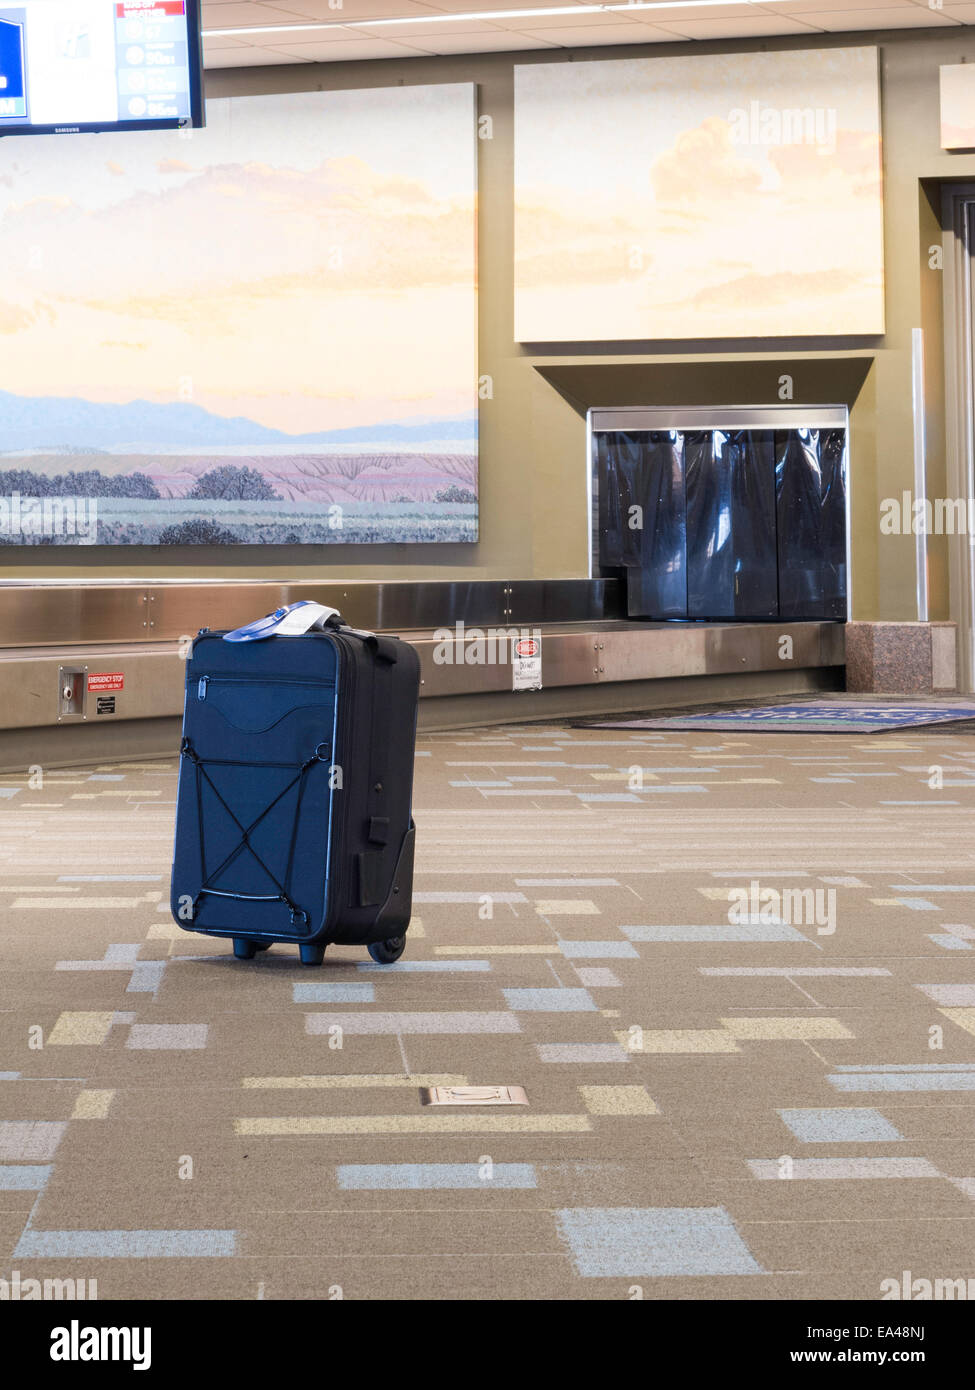 Koffer am Flughafen Gepäck Anspruch Bereich, USA verloren Stockfotografie -  Alamy